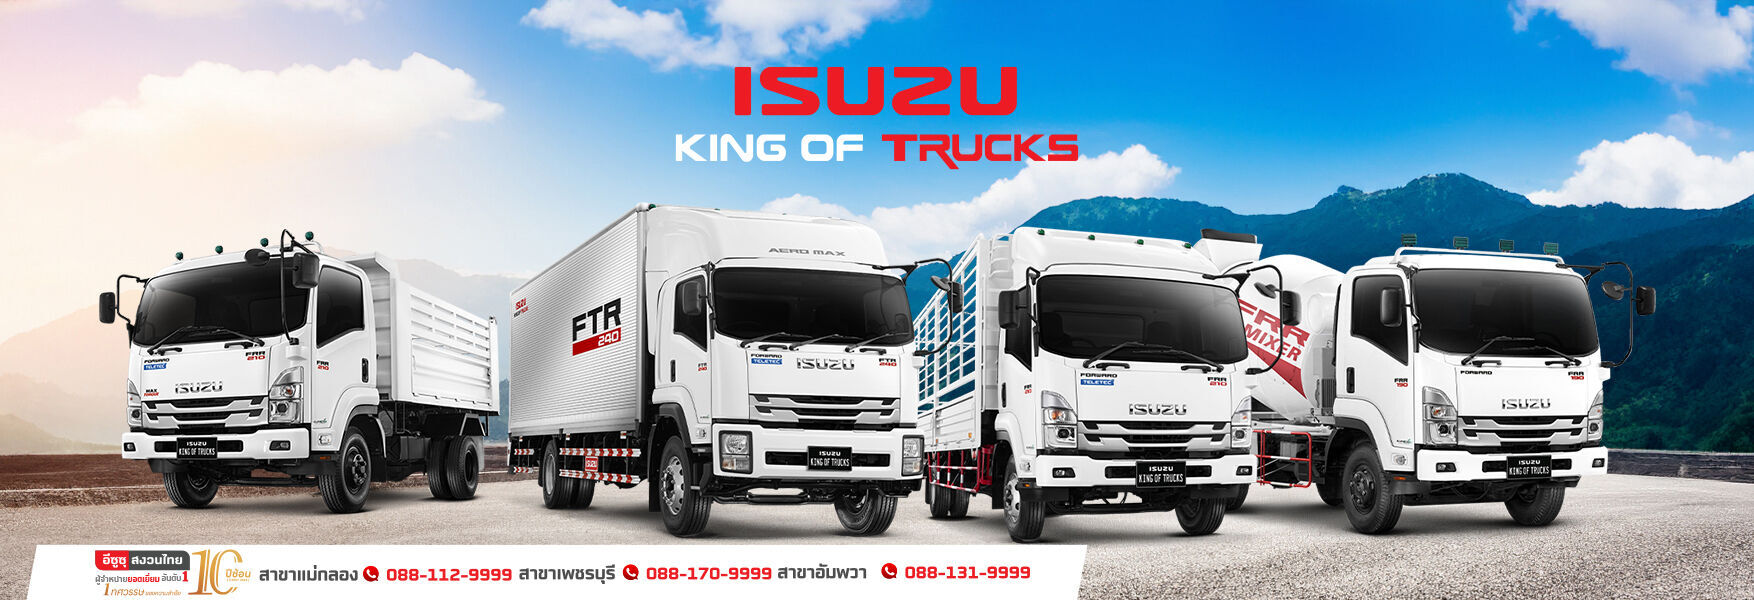 FRR King Of Truck